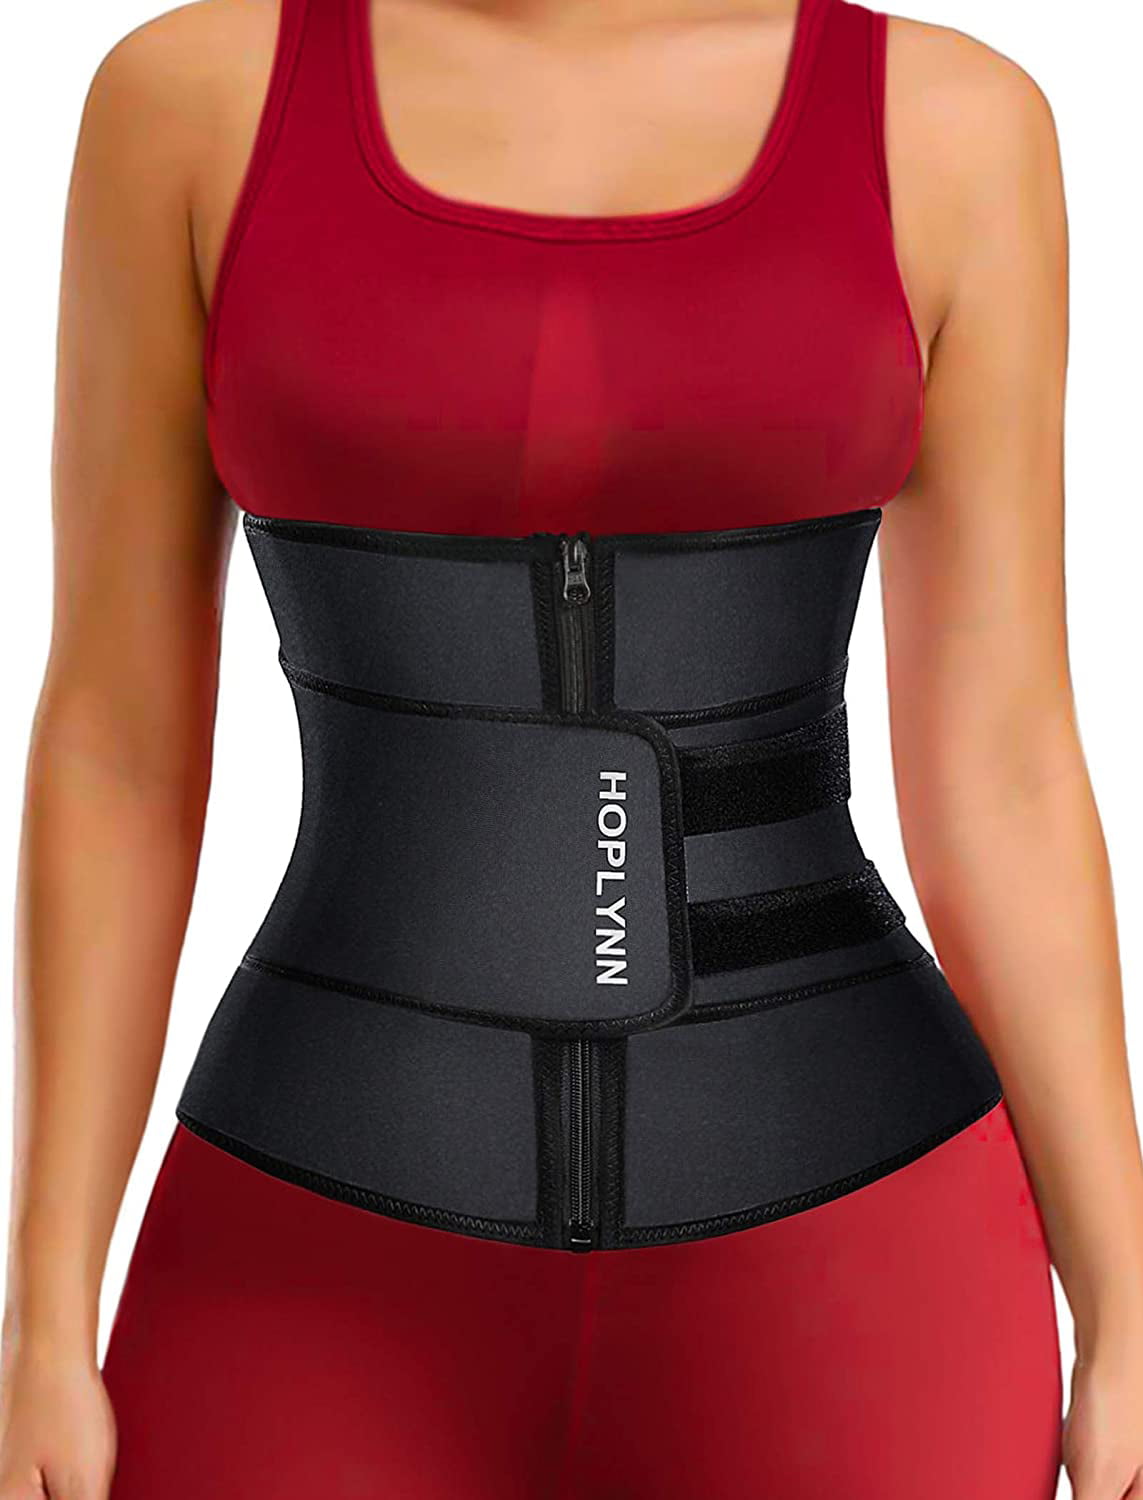 HOPLYNN Neoprene Sweat Waist Trainer for Women Weight Loss Waist Cinchers Trimmer Corset Belt for Women Postpartum